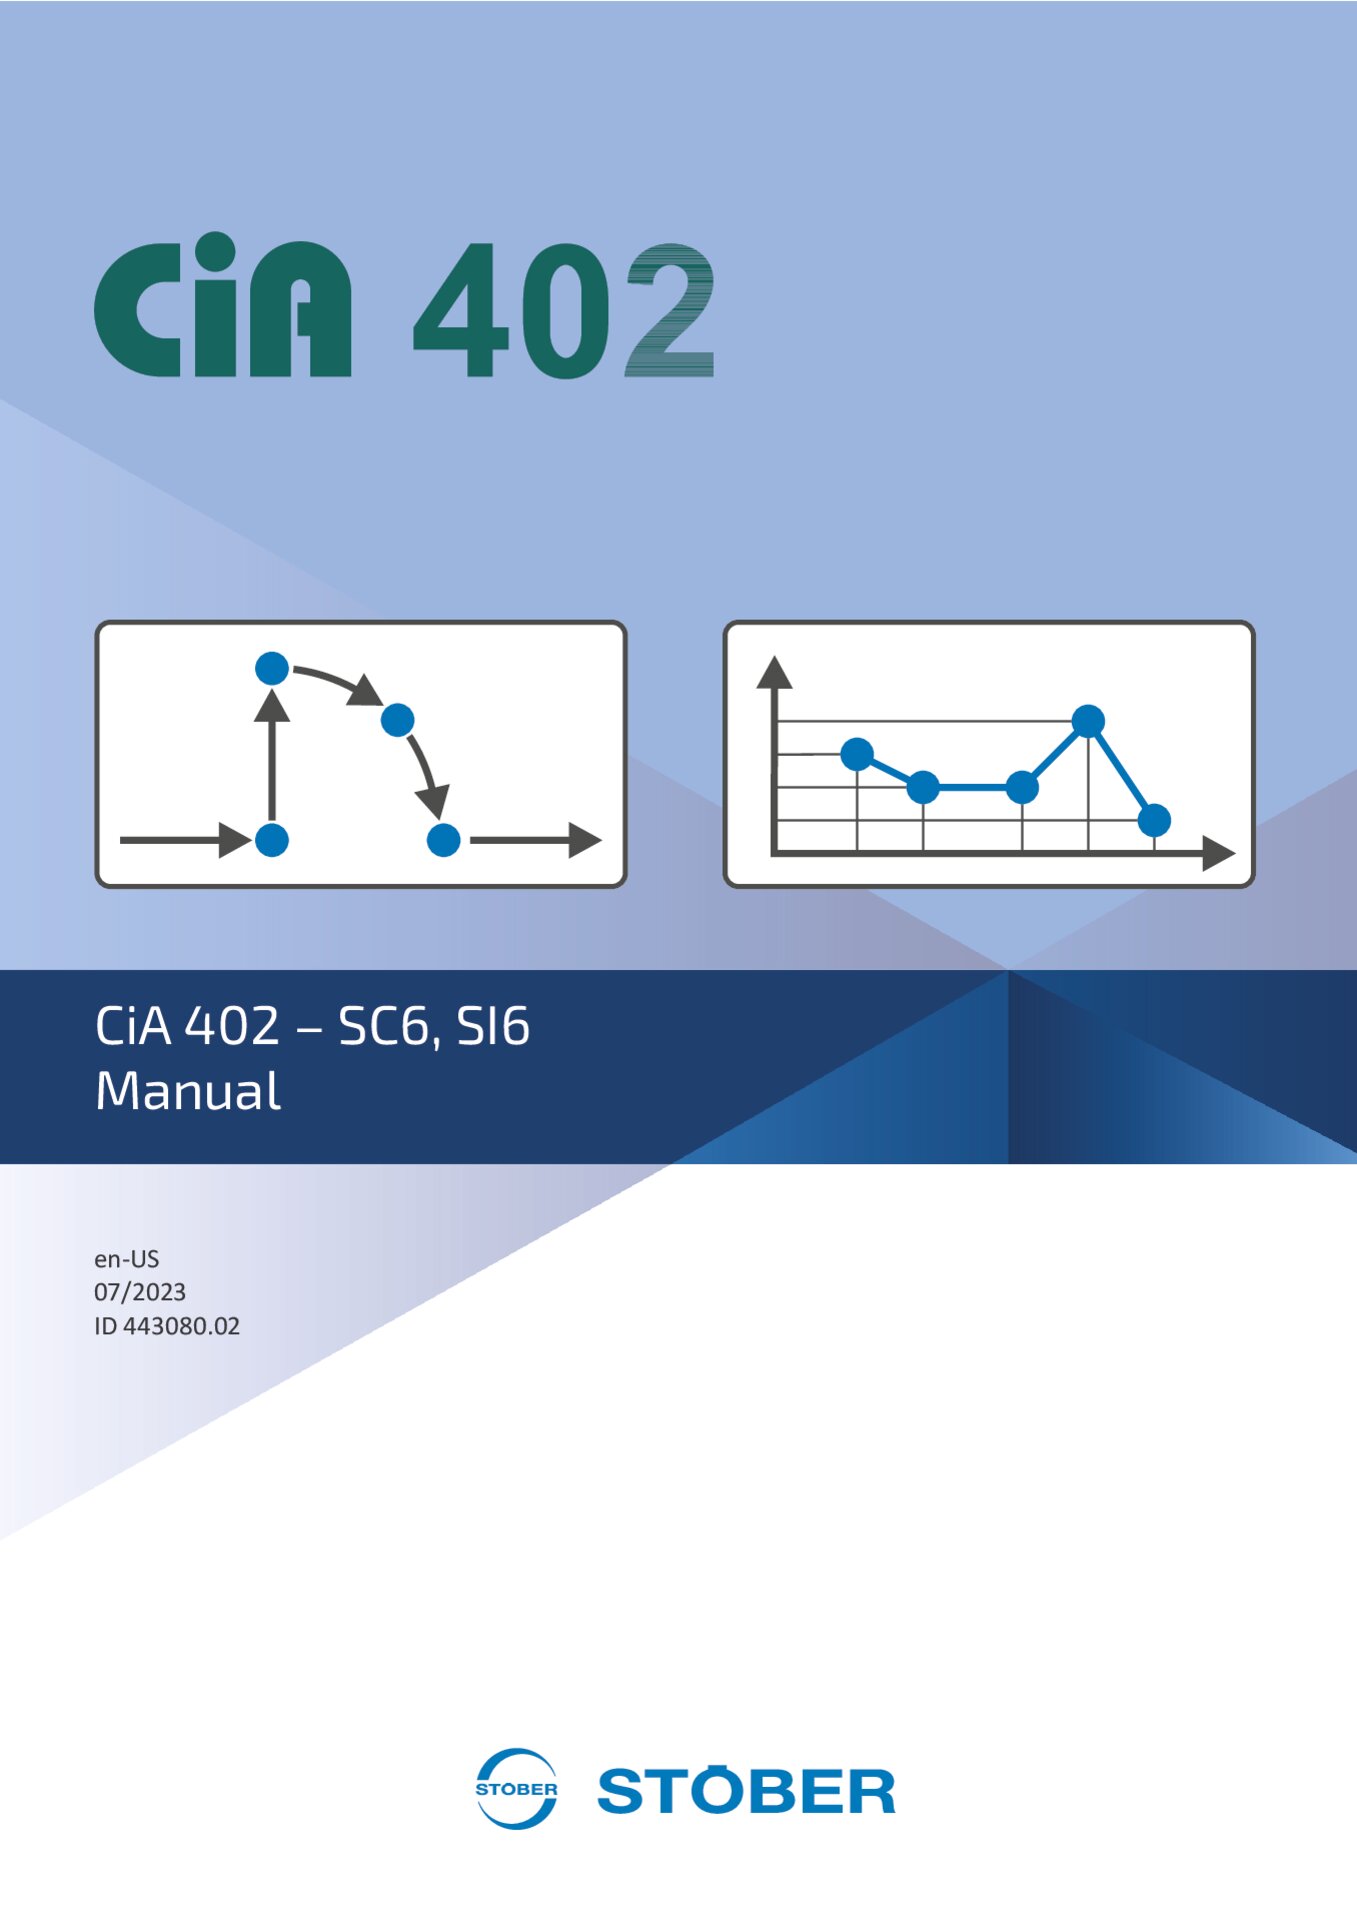 Manual CiA 402 - SC6 SI6